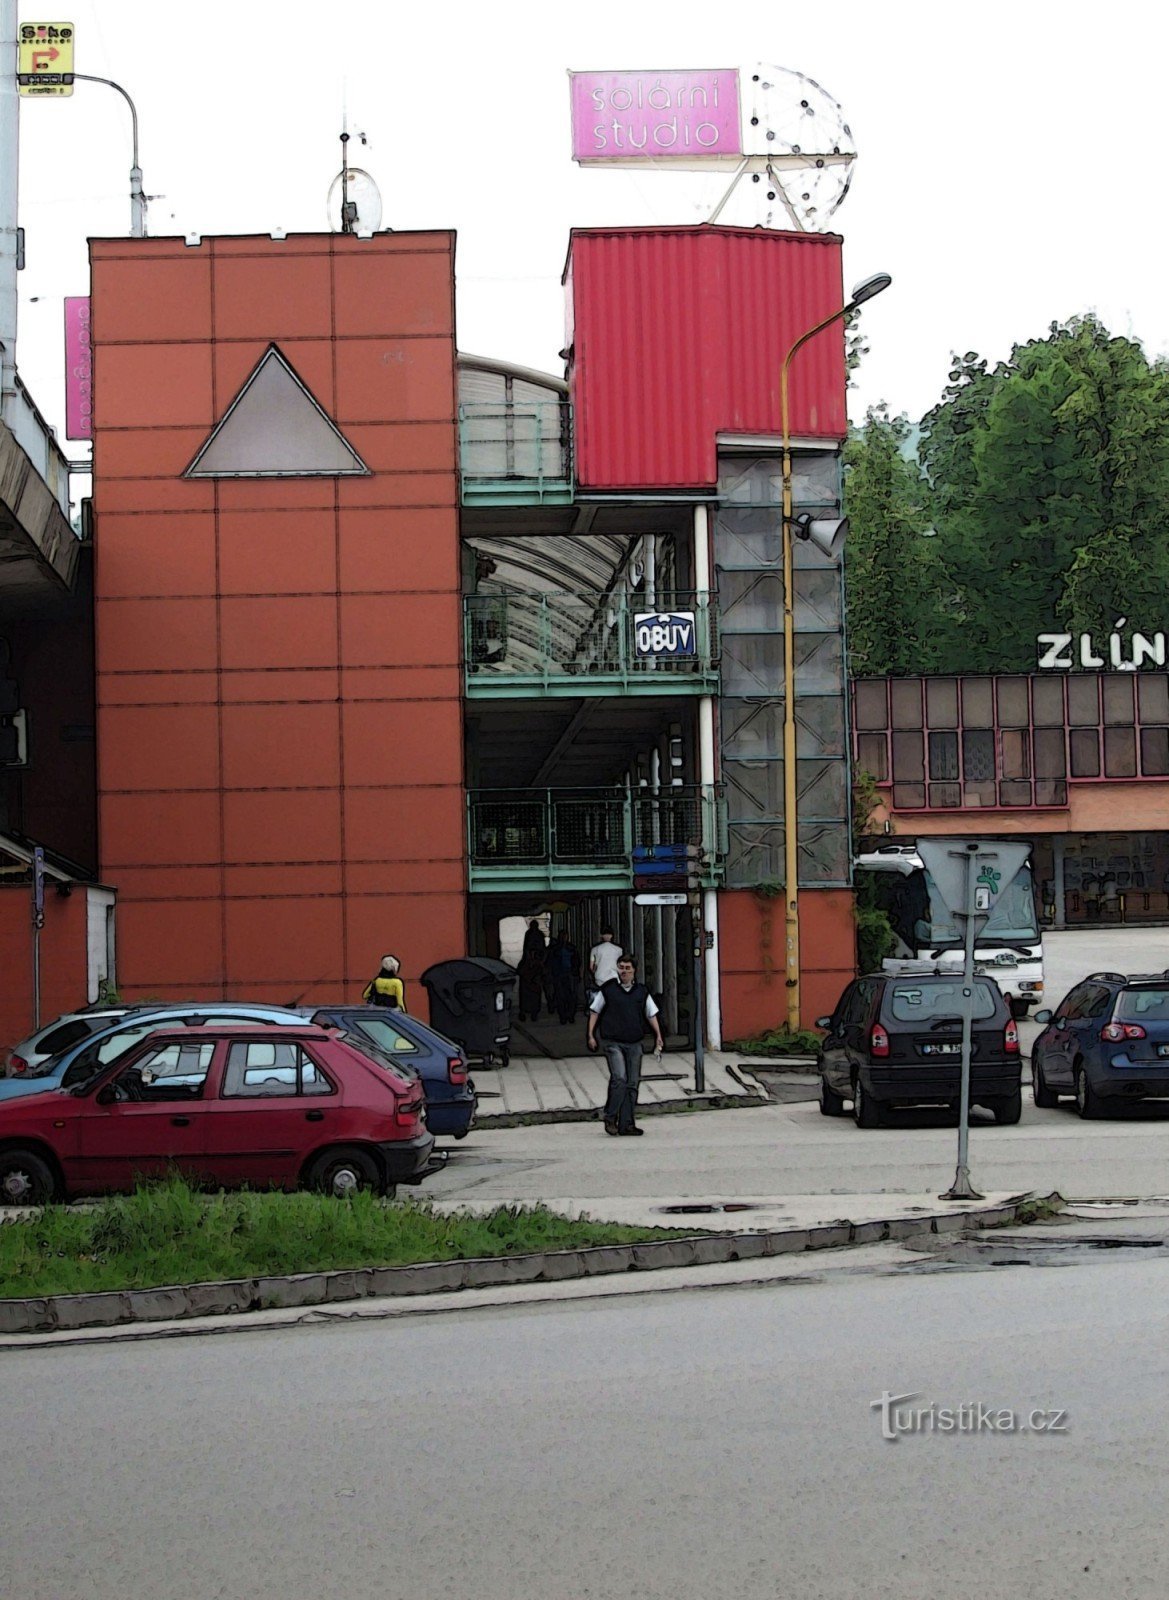 Estación de autobuses de Zlín